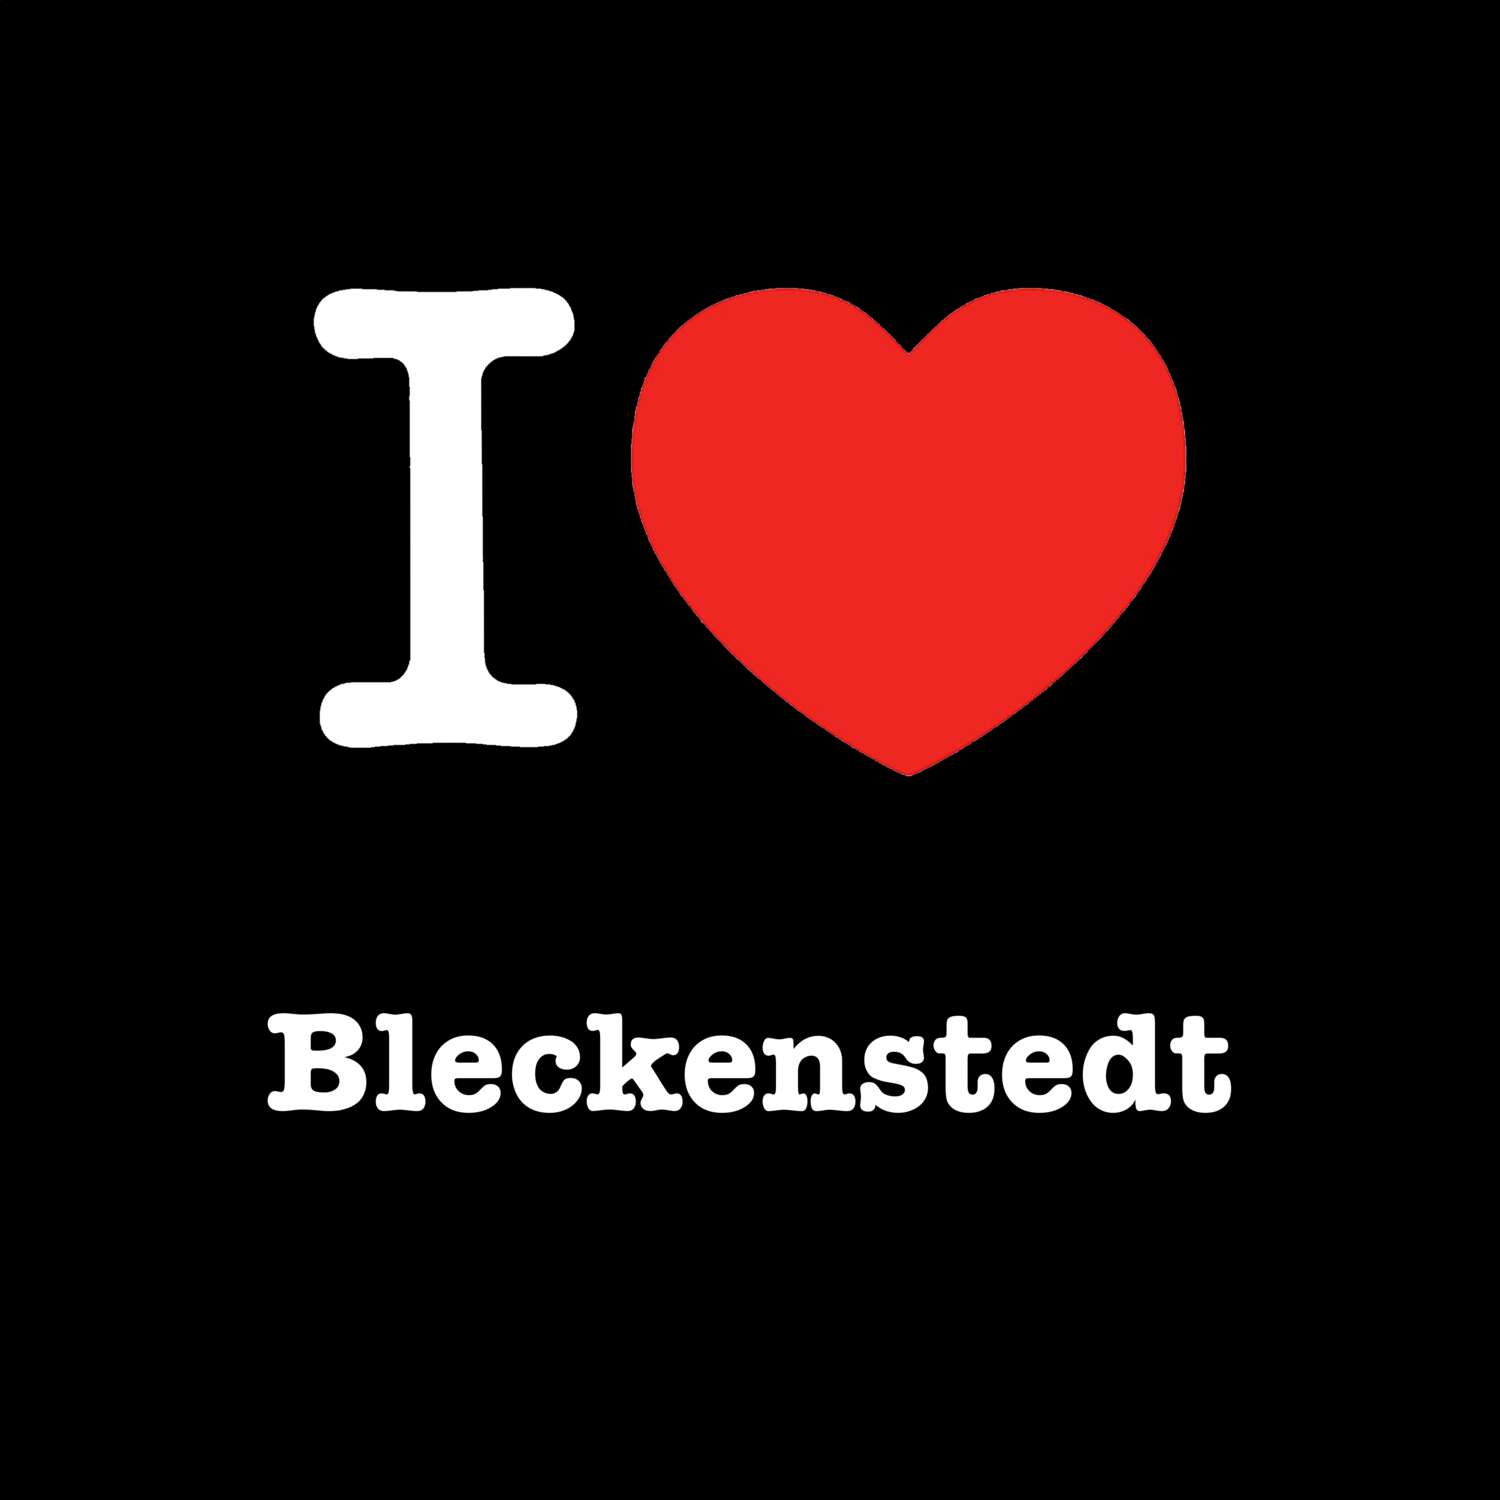 Bleckenstedt T-Shirt »I love«